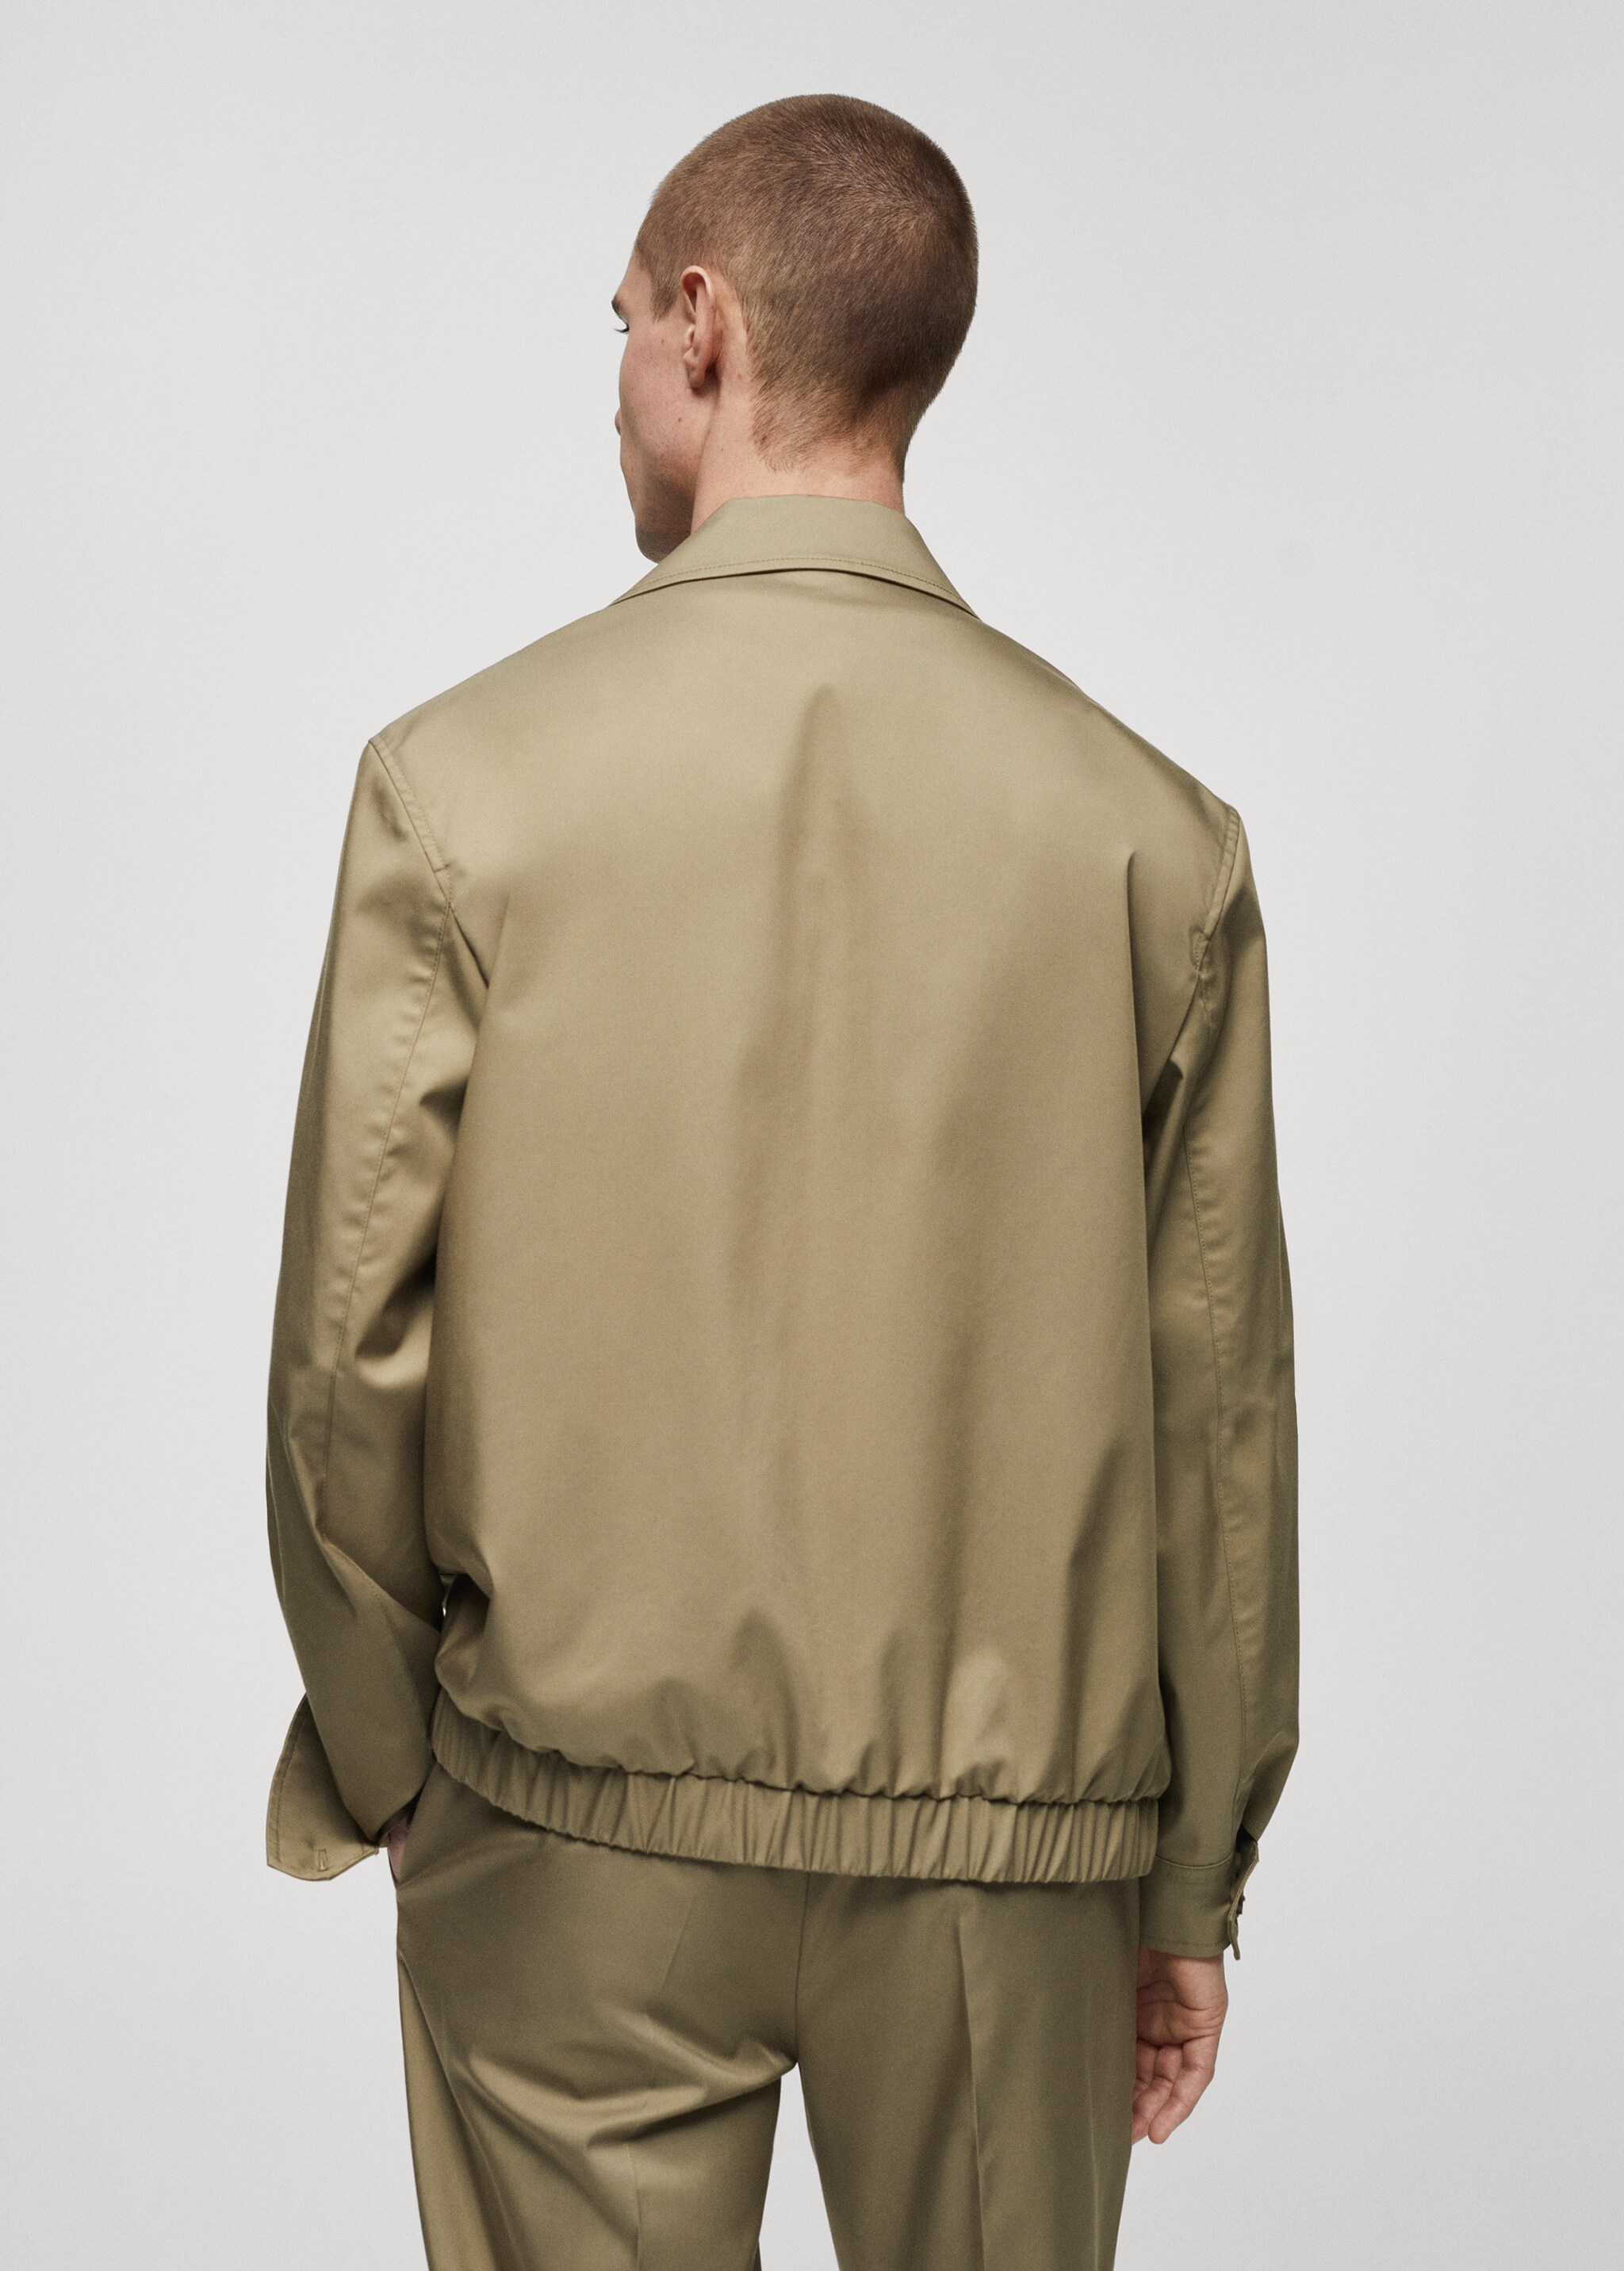 Bomber-Jacke mit Reißverschluss - Rückseite des Artikels